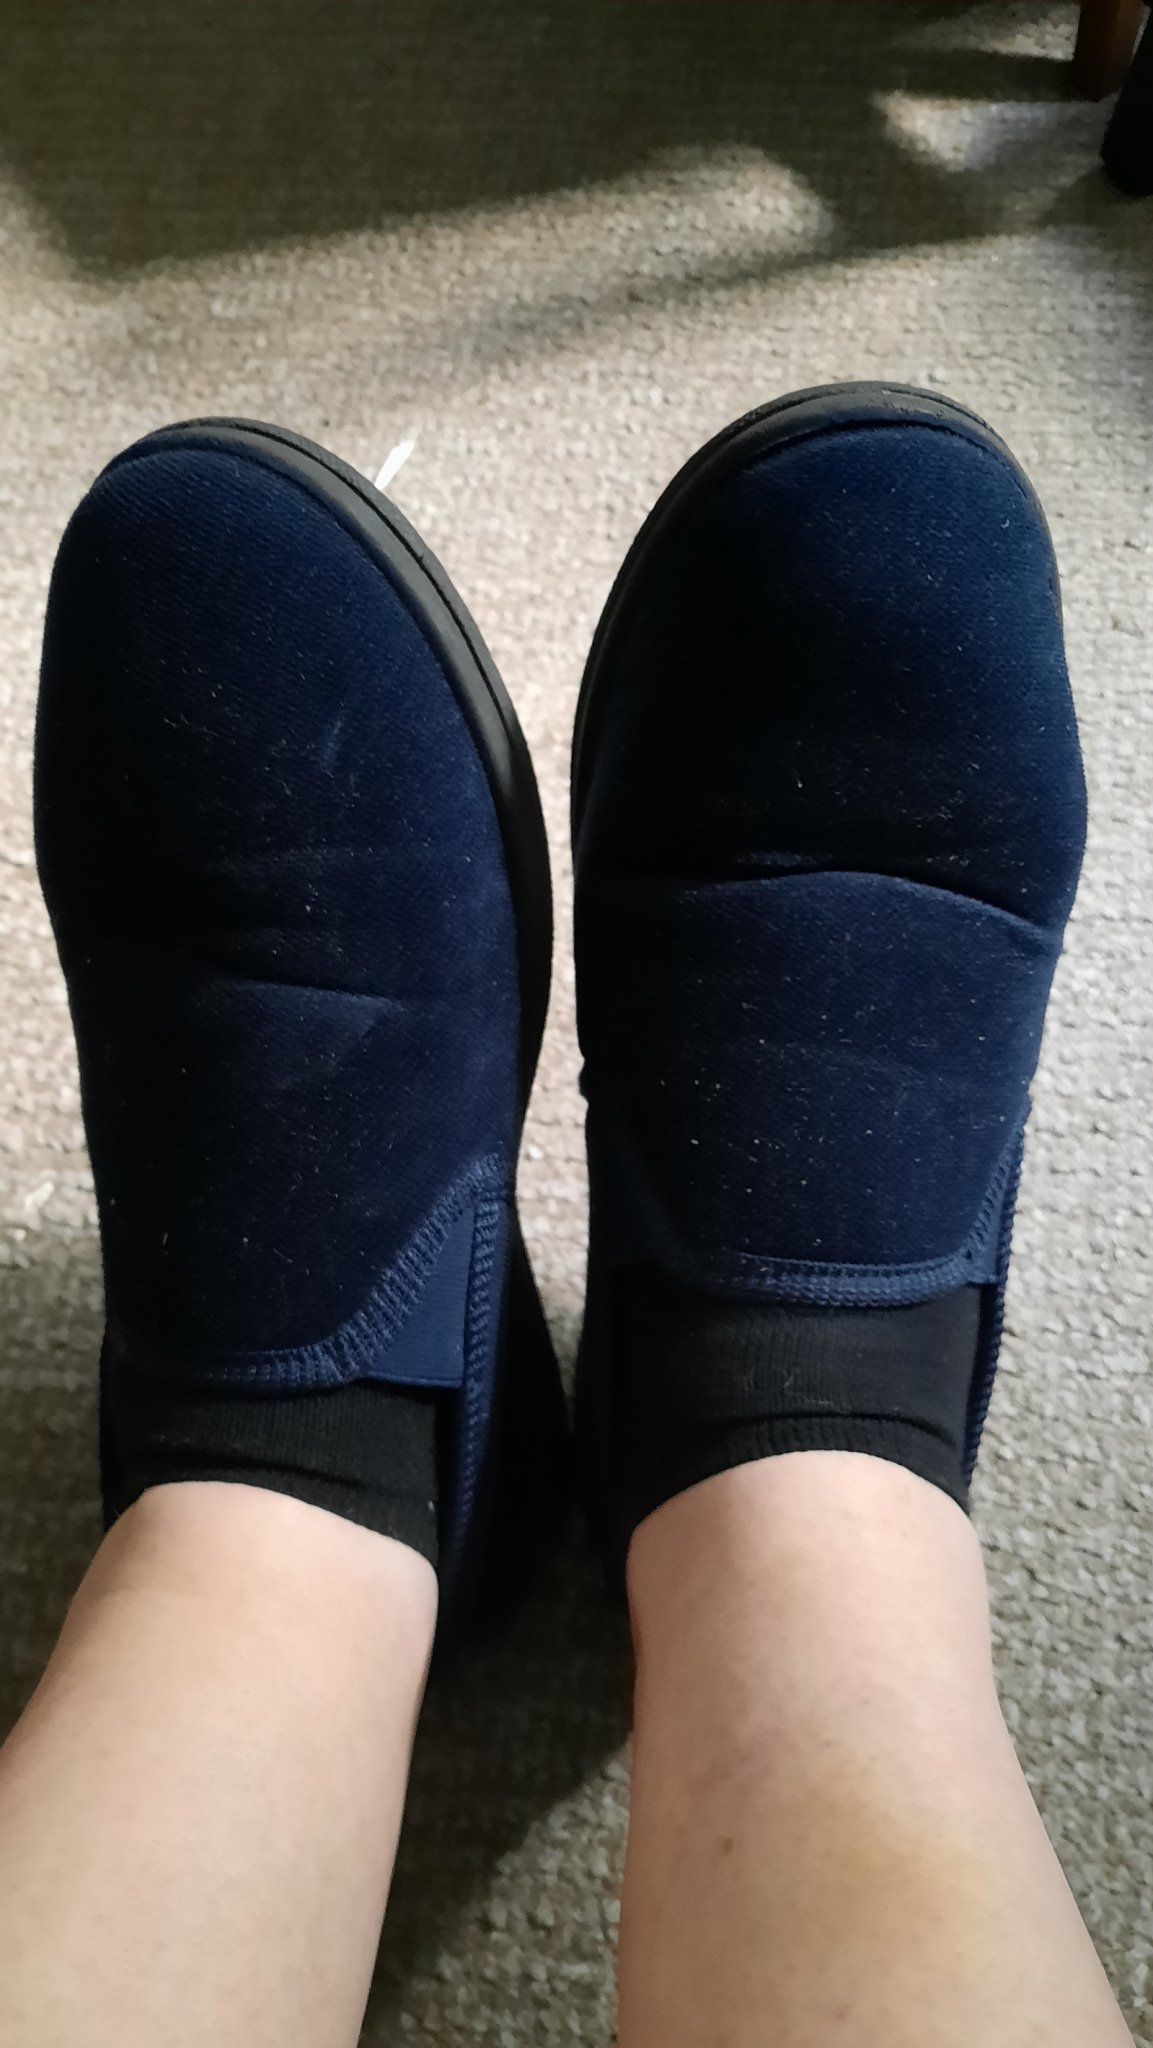 grandad slippers.jpg